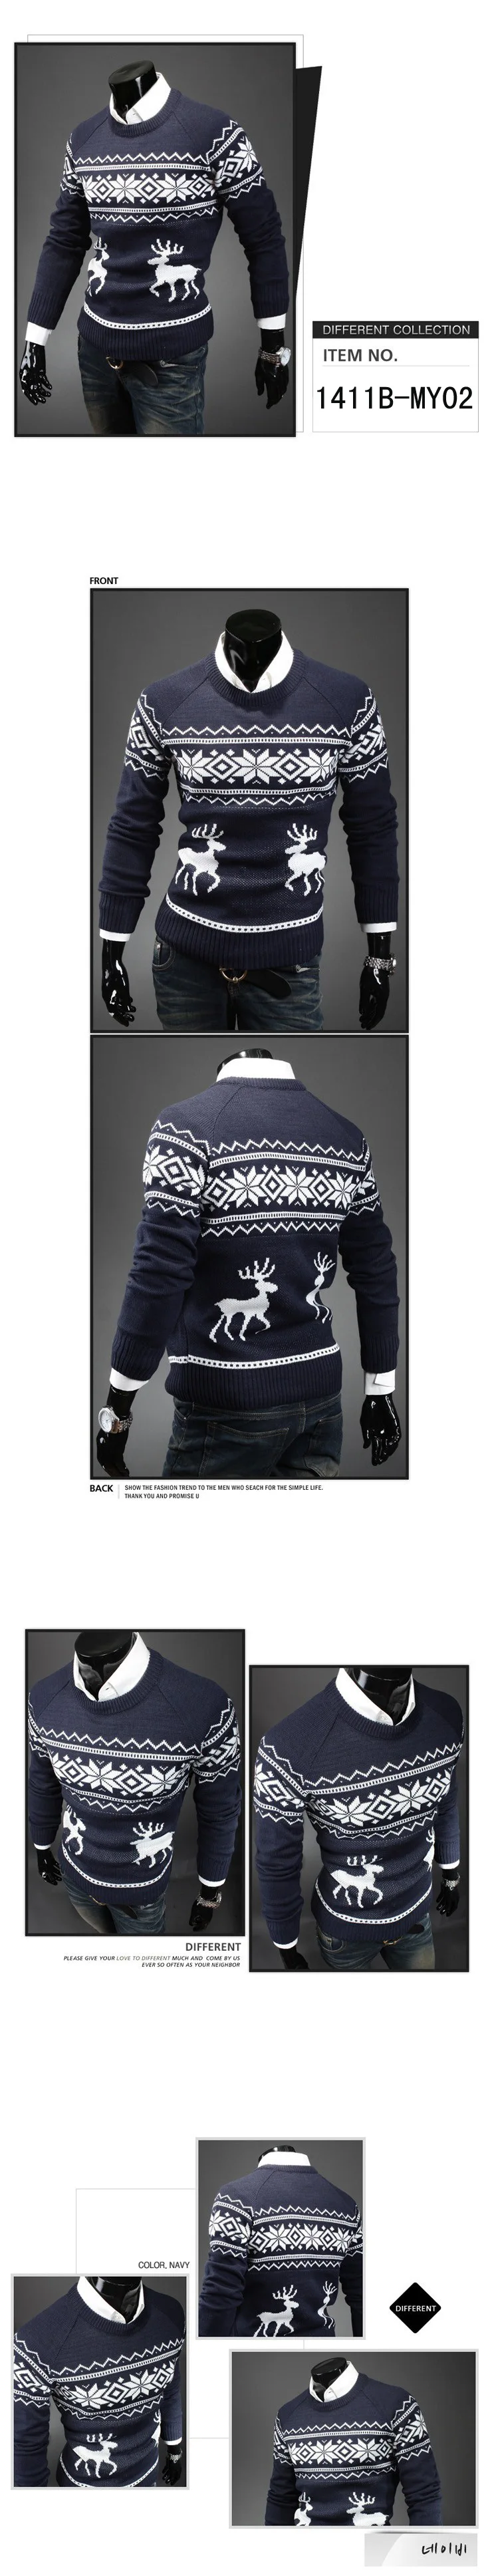 Новый мужской свитер Повседневный осенне-зимний модный бренд одежды Slim Fit брендовый вязаный пуловер дропшиппинг верхнее пальто